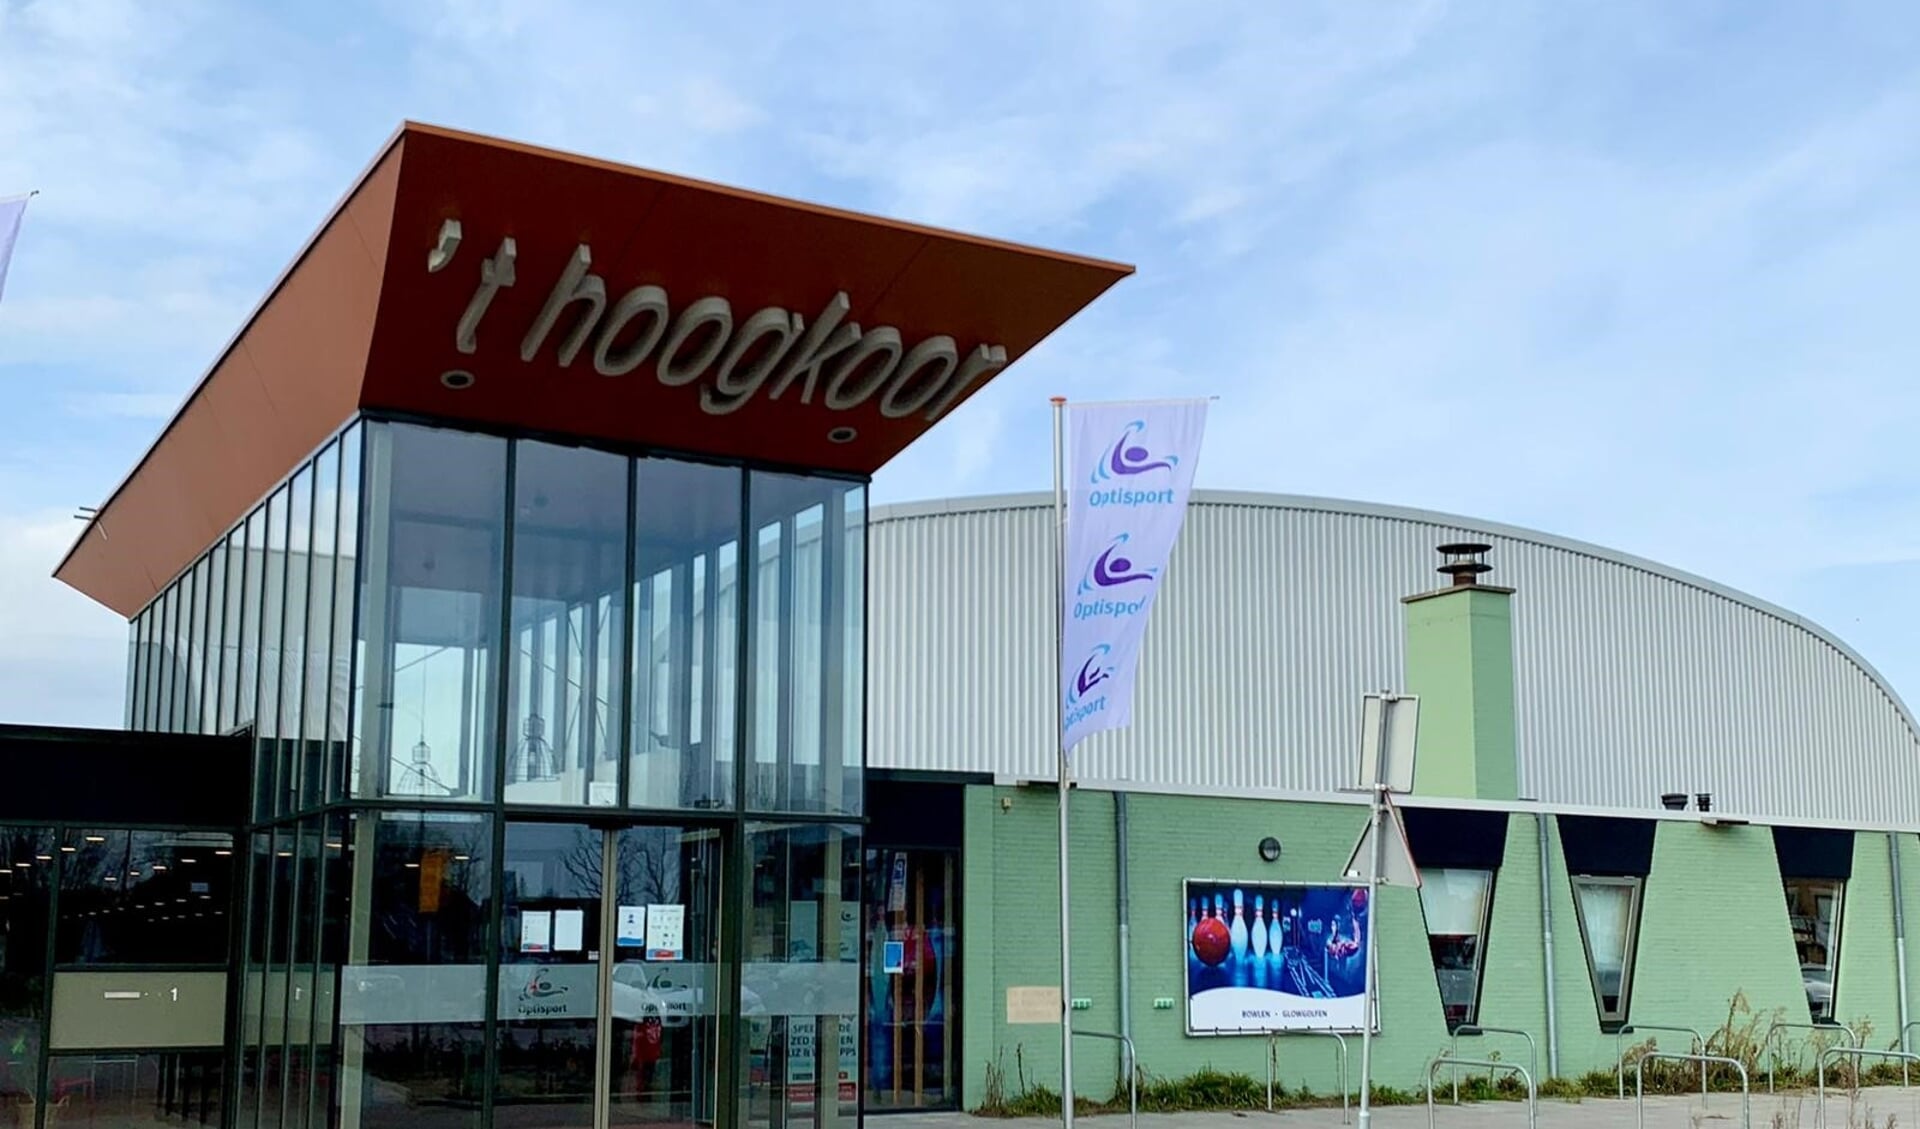 Binnenkort kan men zich in Sportcentrum 't Hoogkoor laten vaccineren tegen Covid-19.